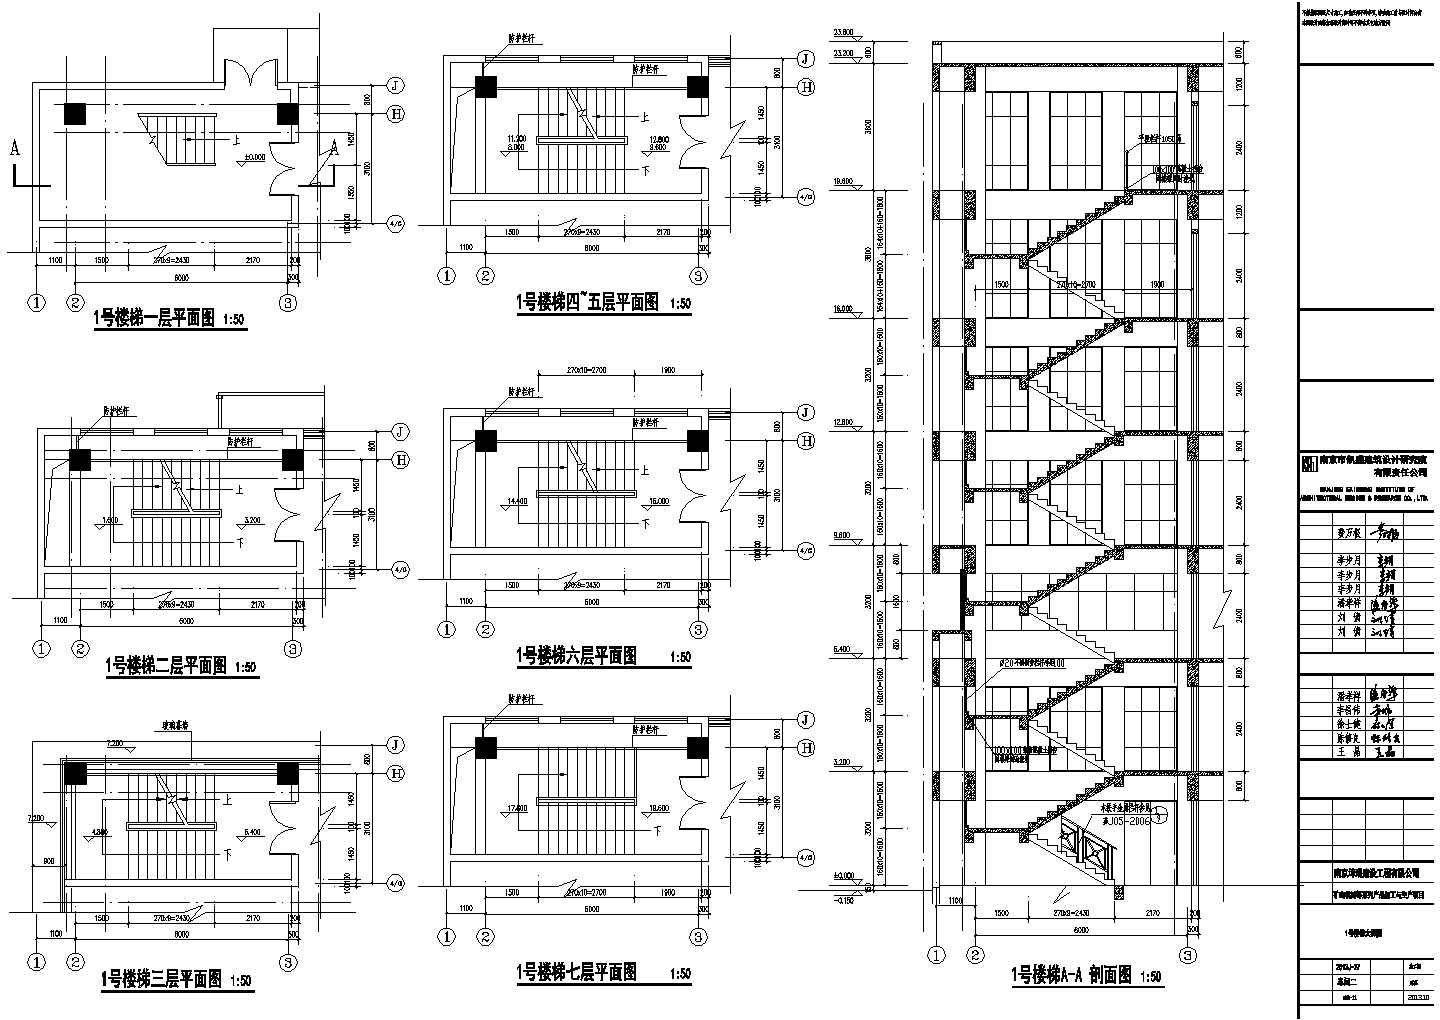 某综合性框架多层厂房设计施工图纸